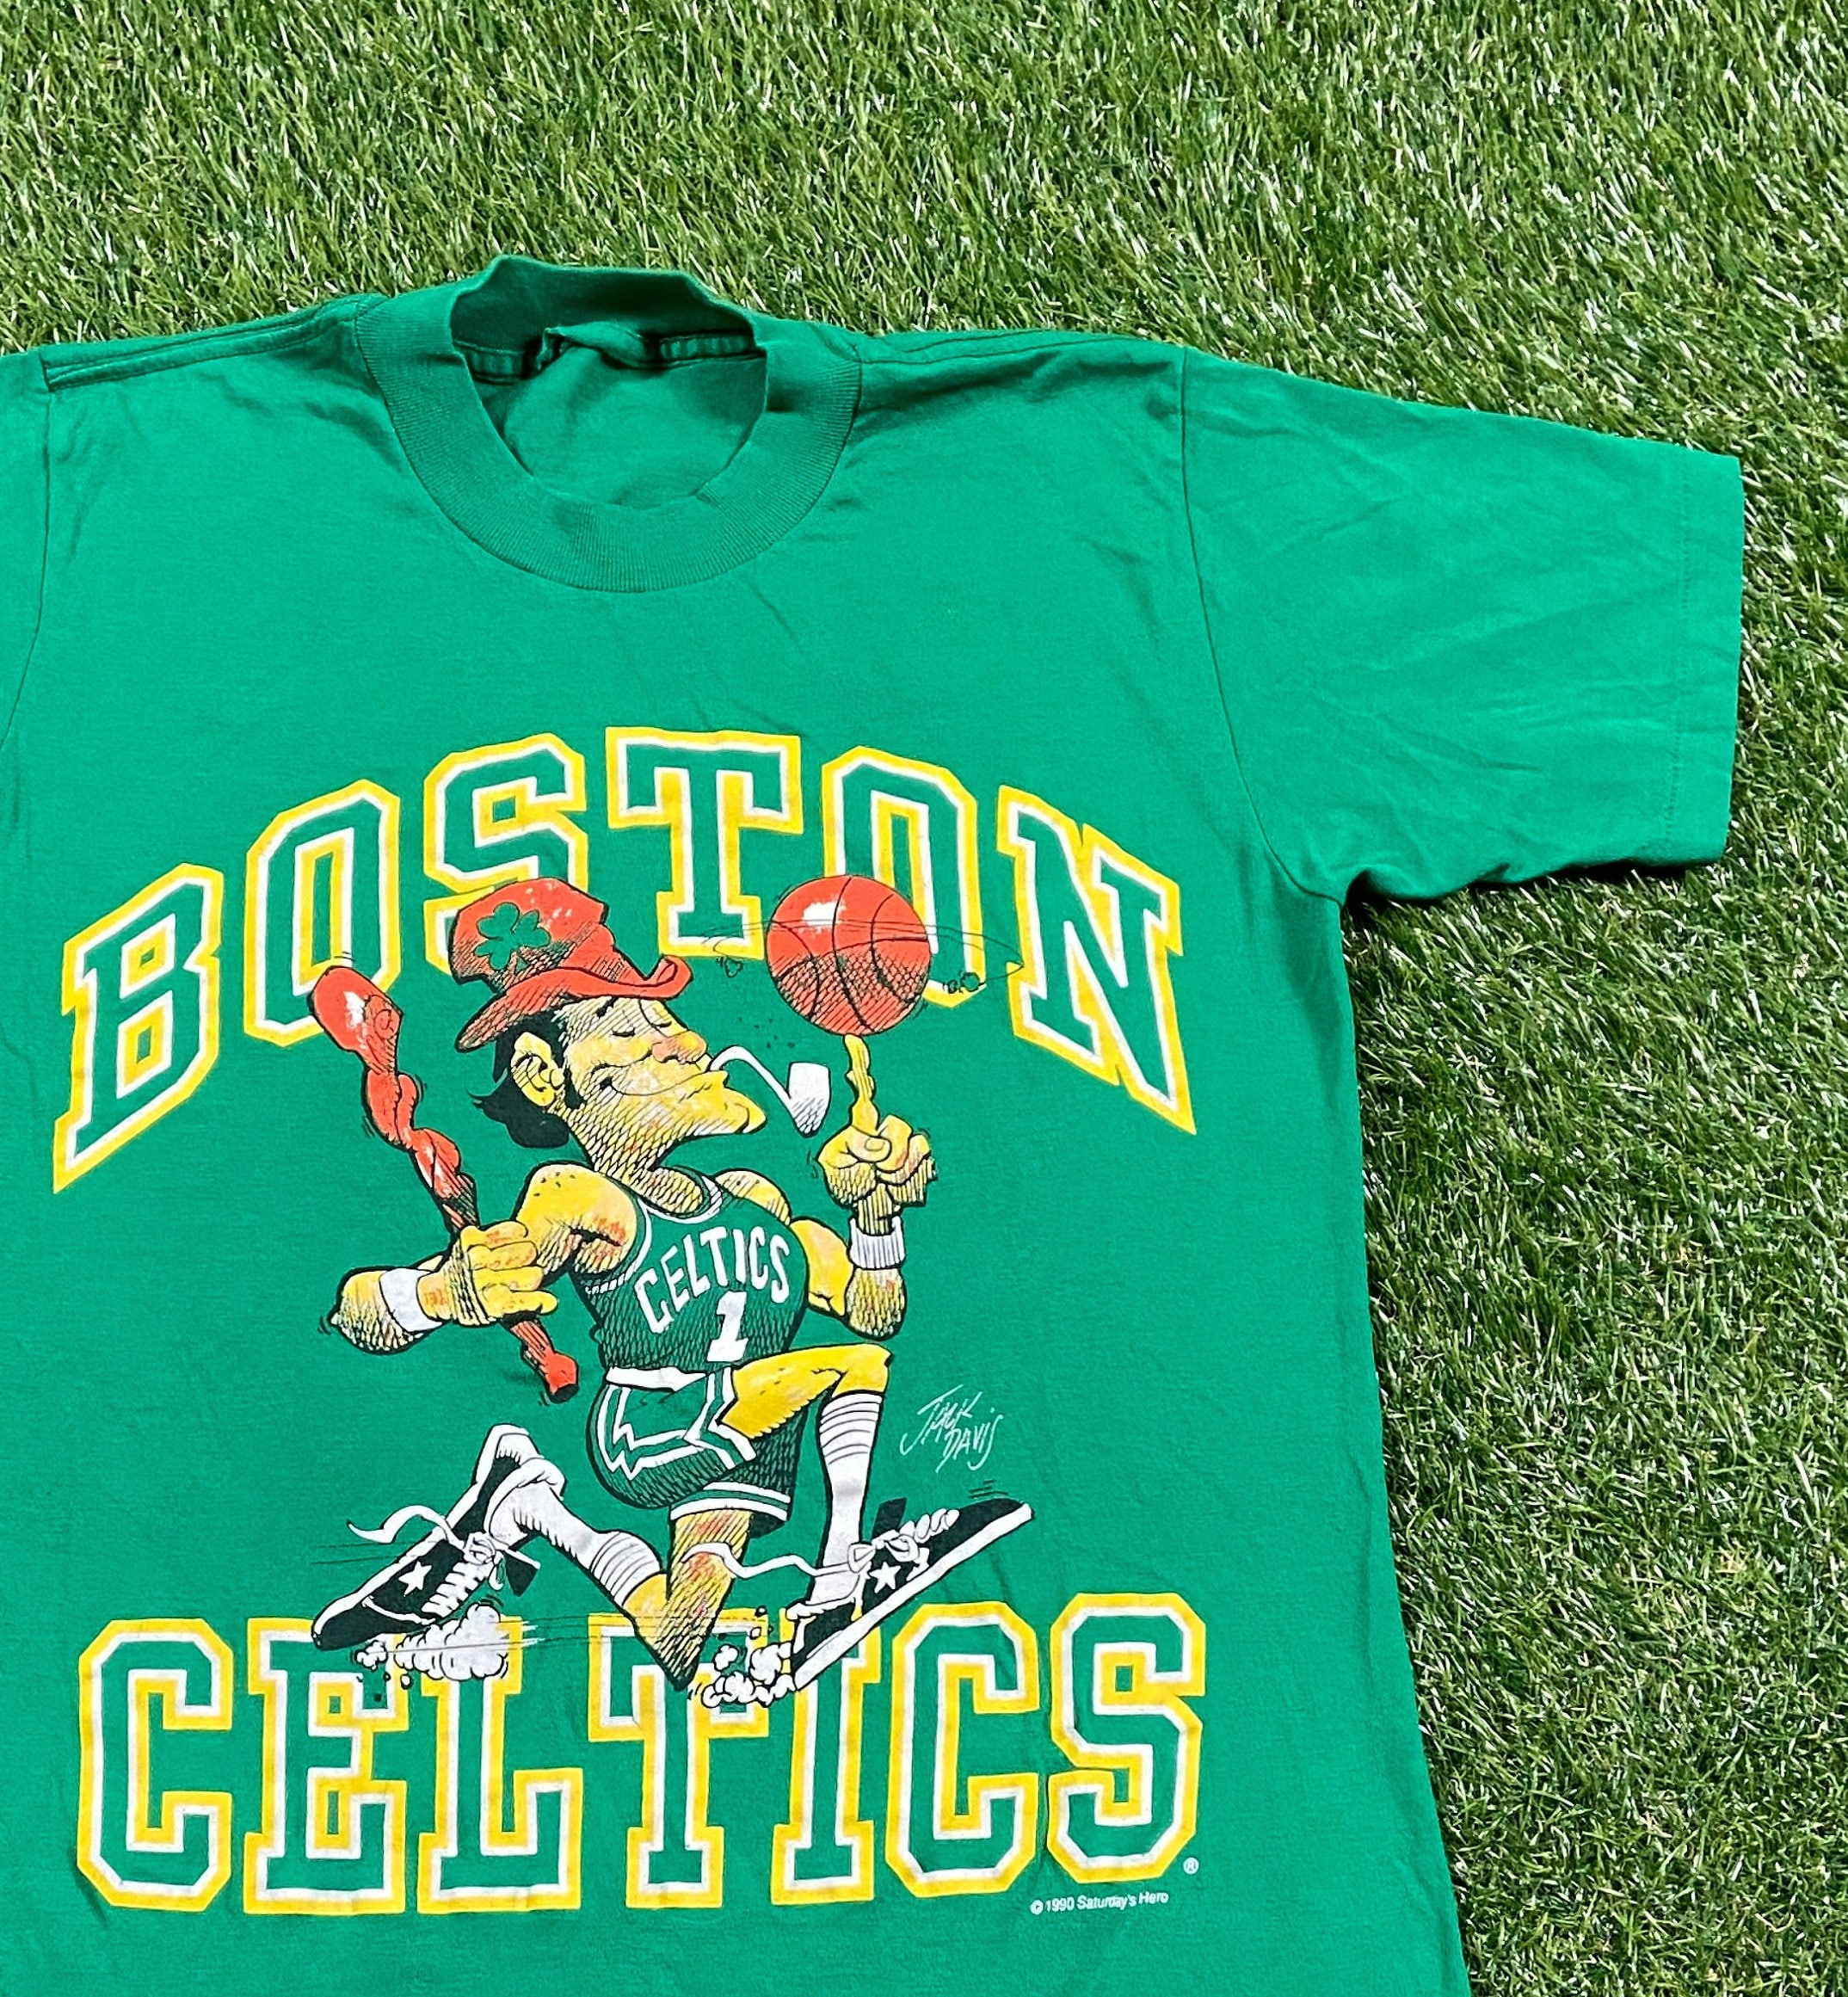 Boston Celtics Jersey concept  Basketball t shirt designs, Best